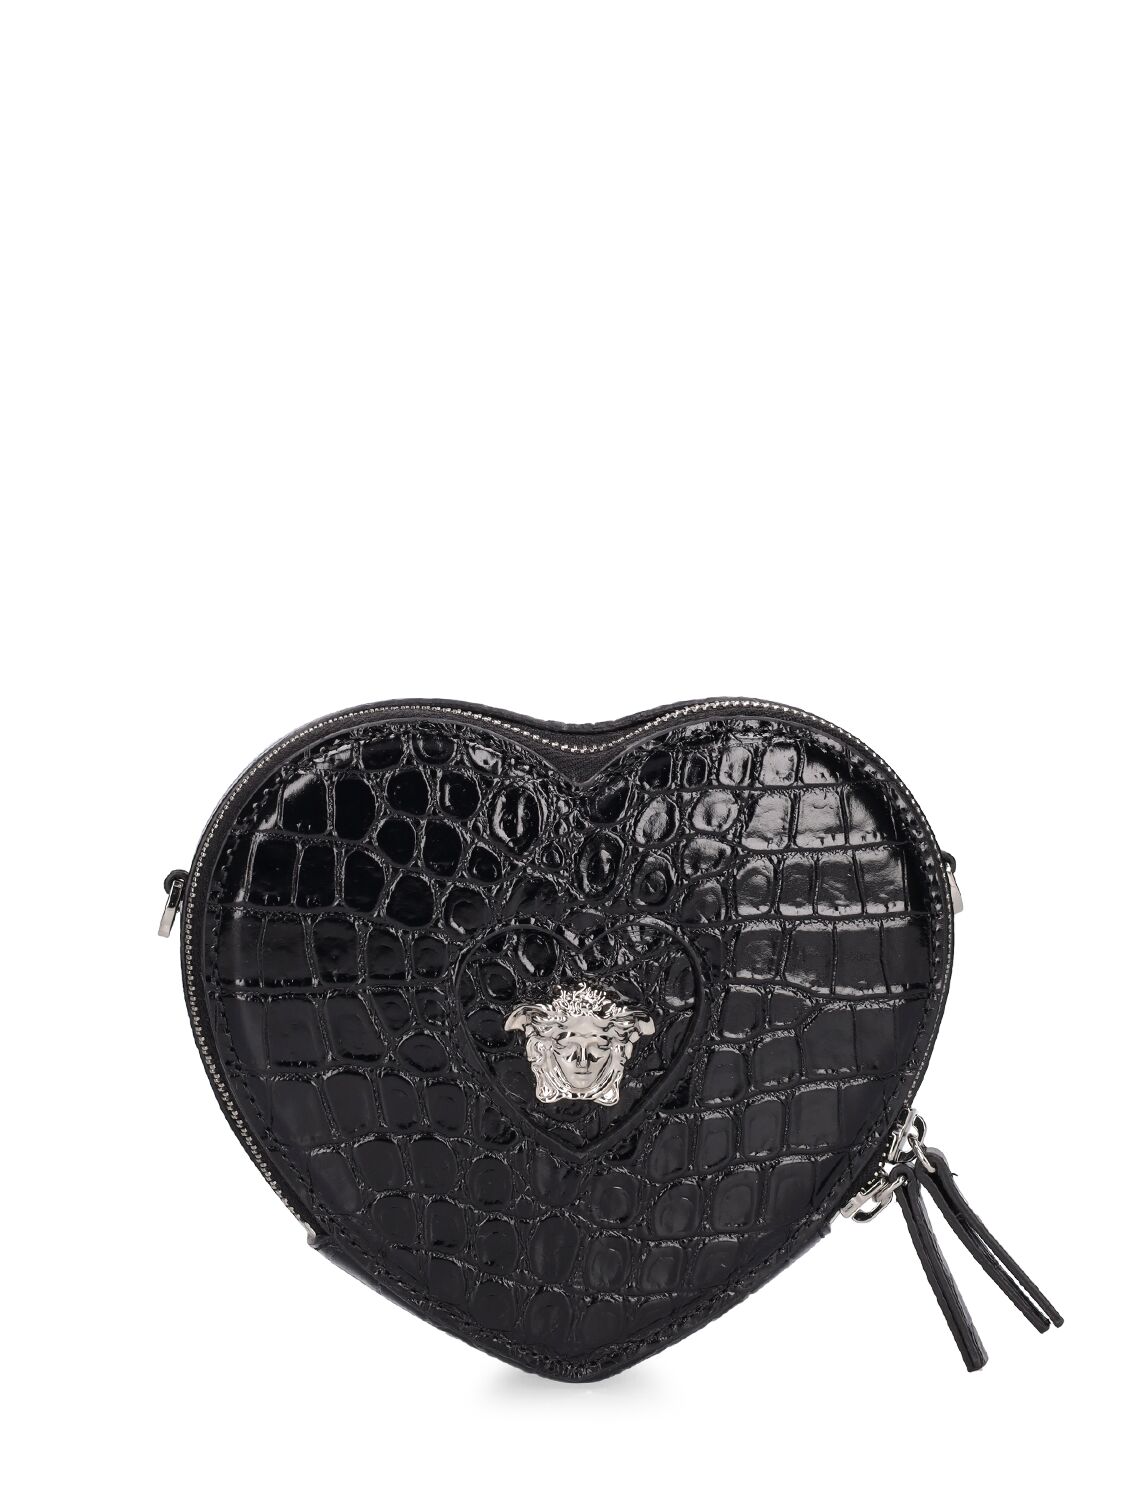 Image of Heart Croc Embossed Leather Shoulder Bag